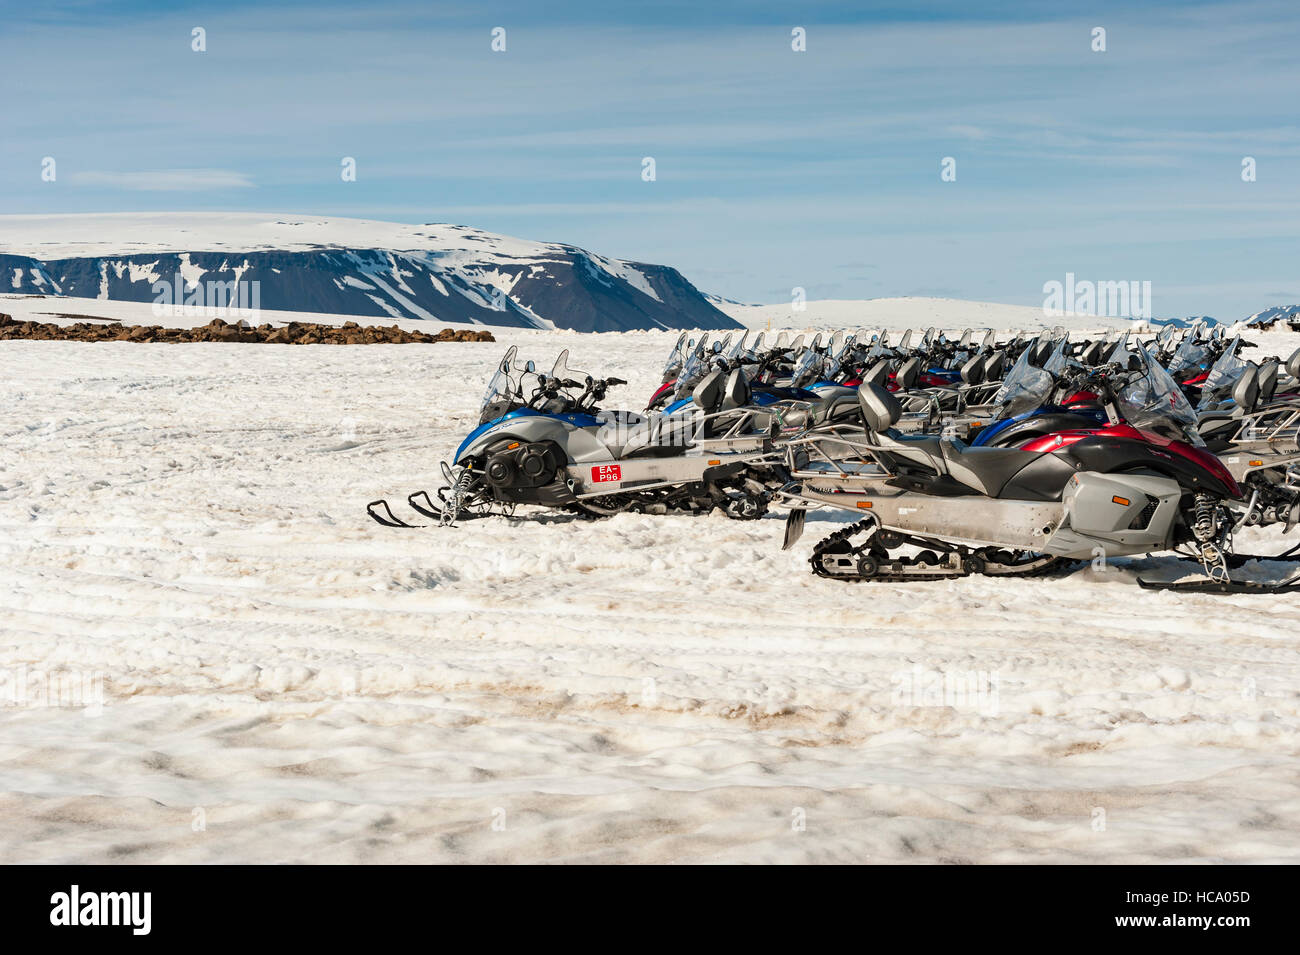 Mehreren Motorschlitten geparkt in einem schneebedeckten Plateau off-Road F336 in Island. Stockfoto